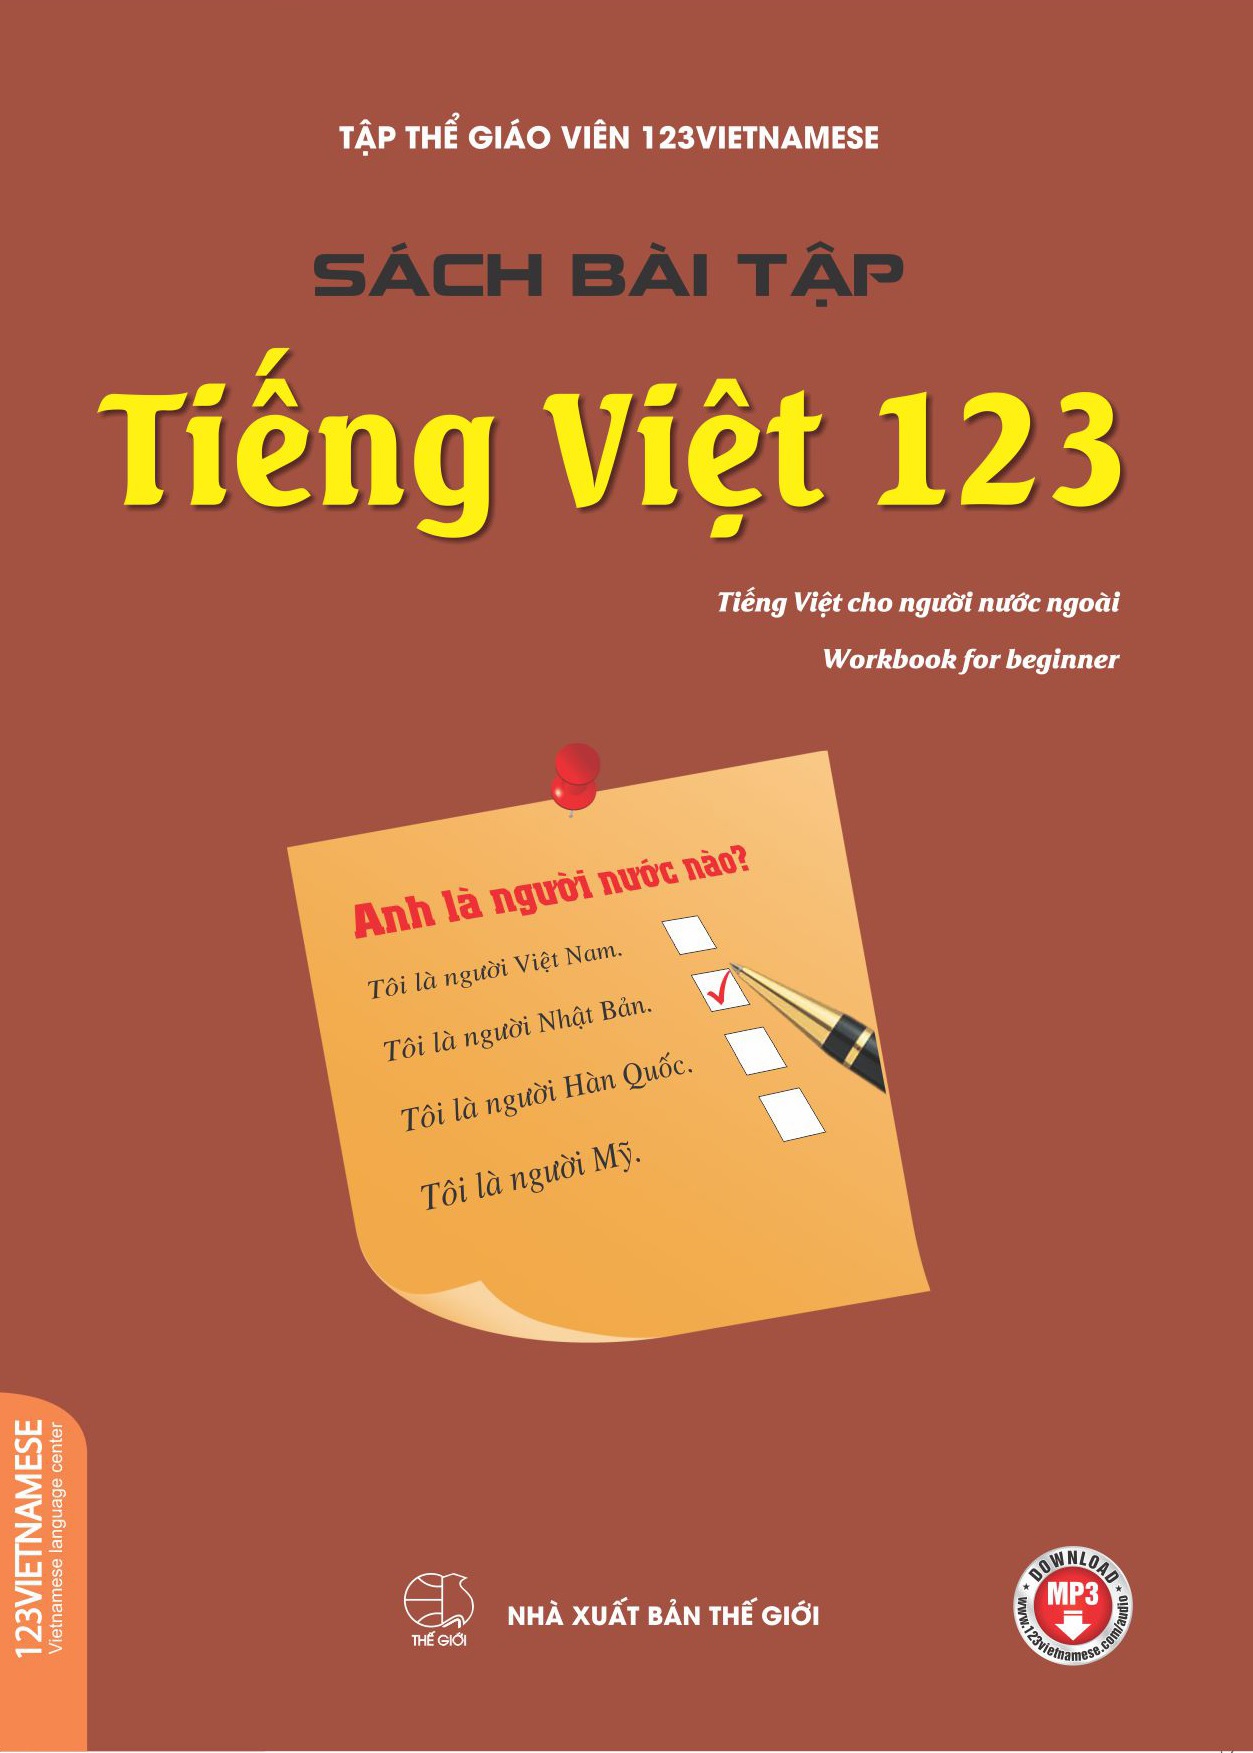 Bìa sách bài tập Tiếng Việt 123